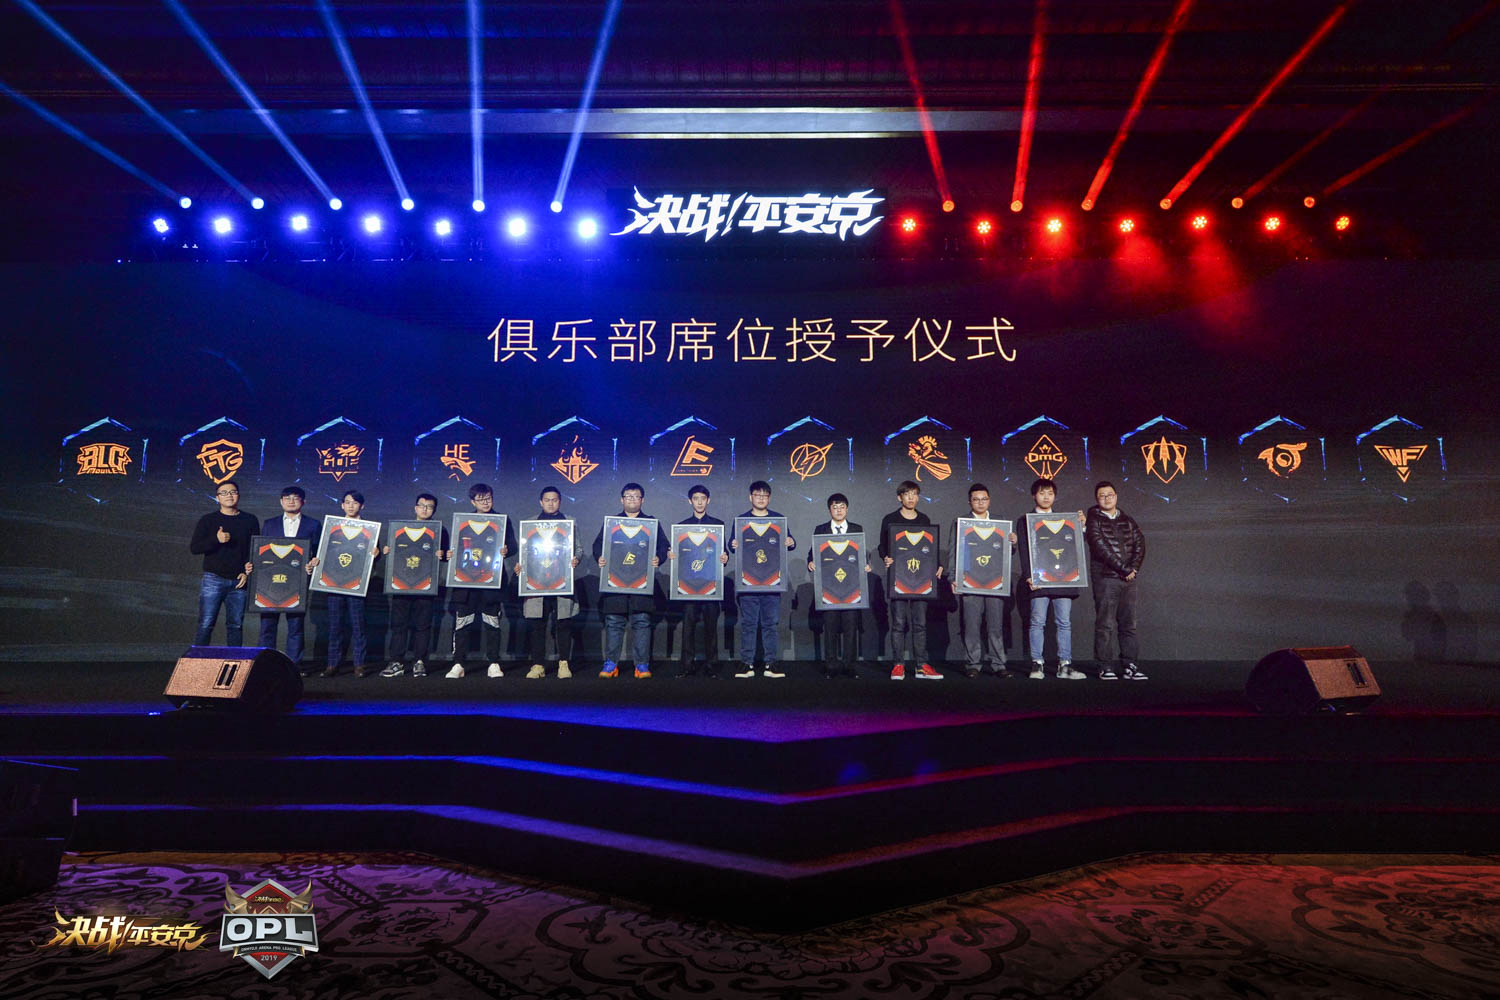 网易公布首个电竞职业联赛《决战！平安京》 OPL  中国电竞迎来新巨头